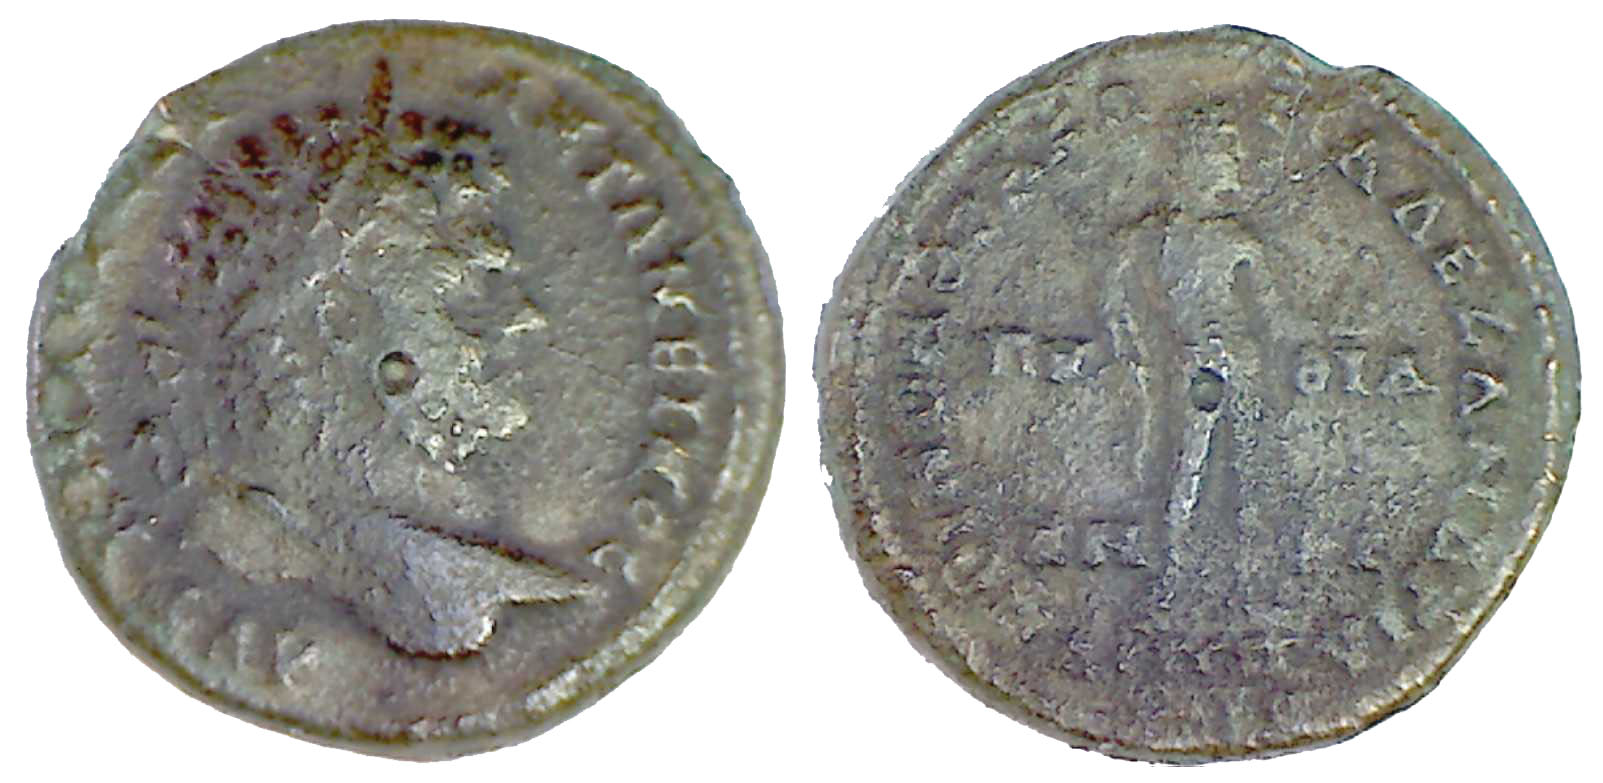 6104 Philippopolis Thracia Caracalla AE